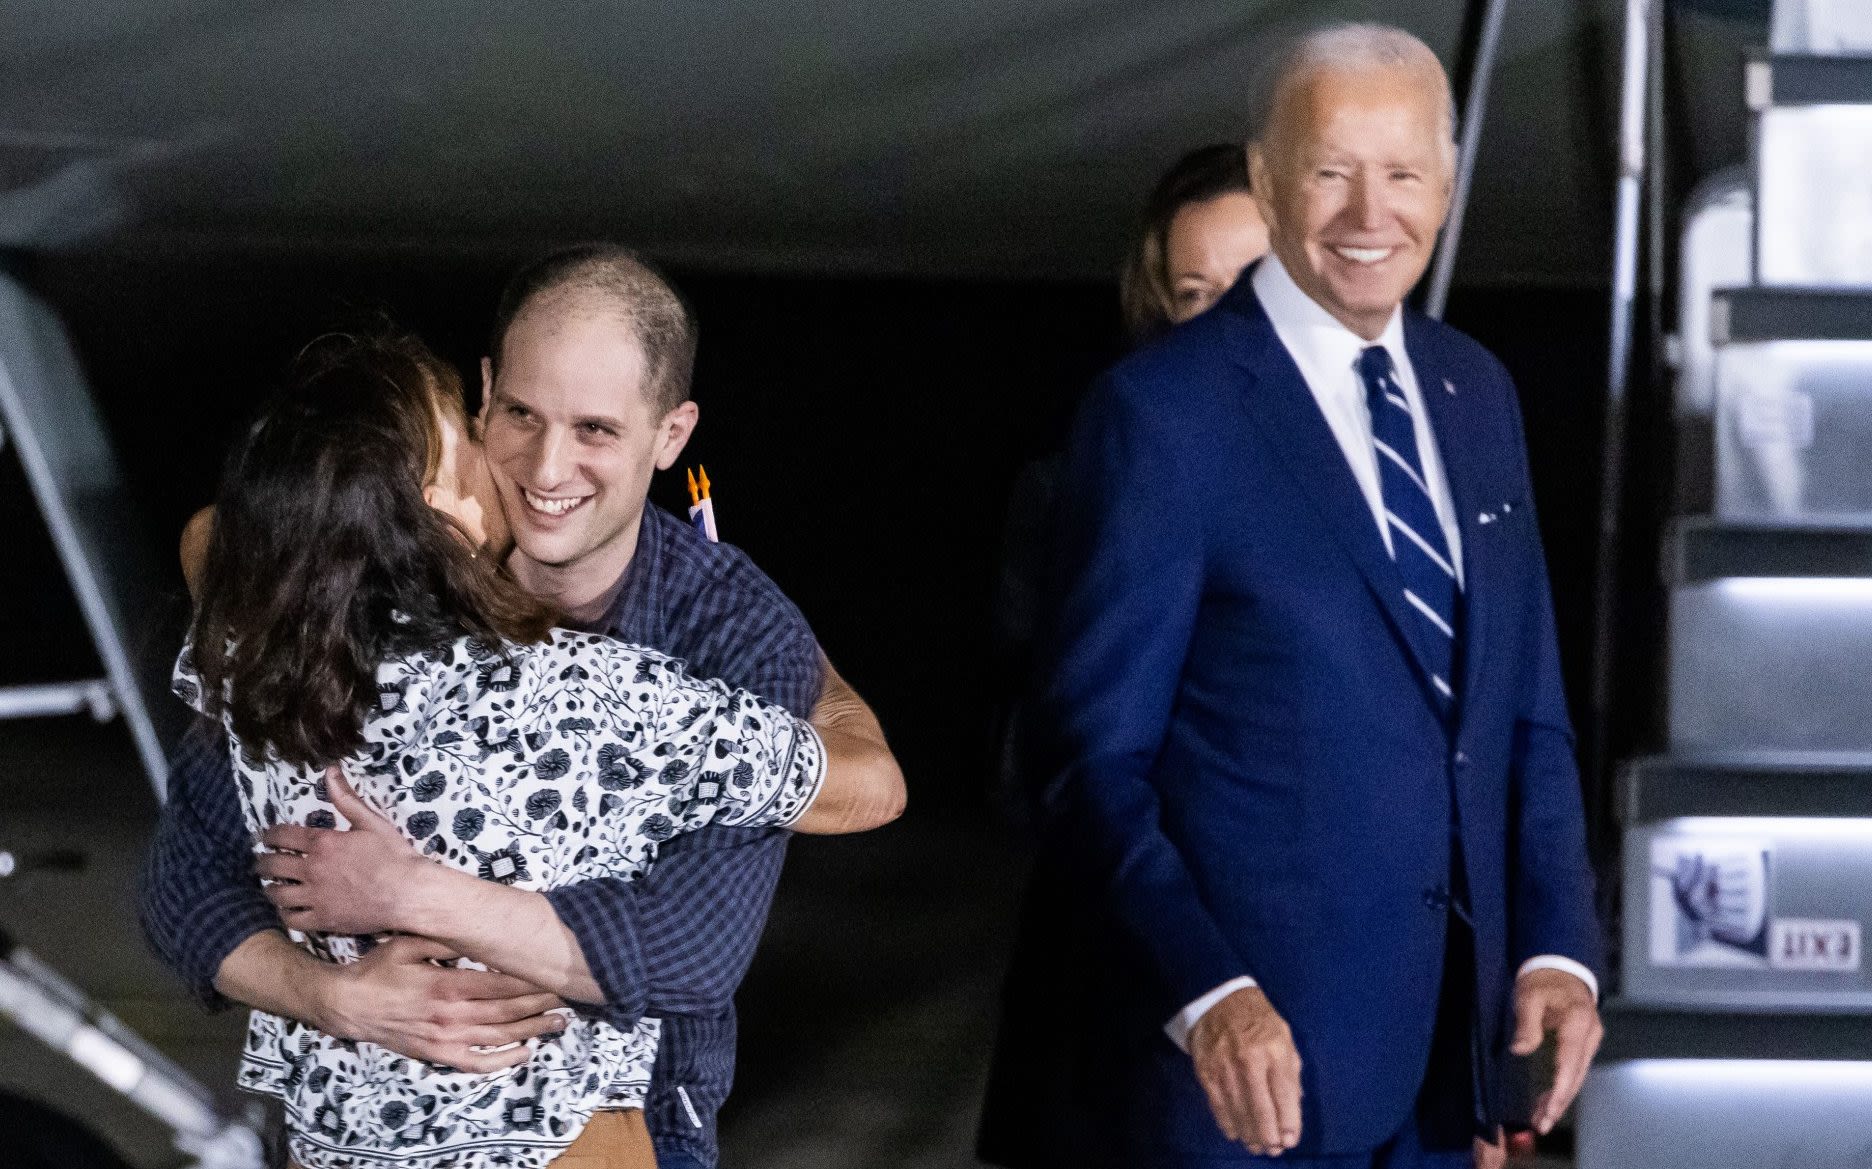 Tears of joy as freed American prisoners arrive home